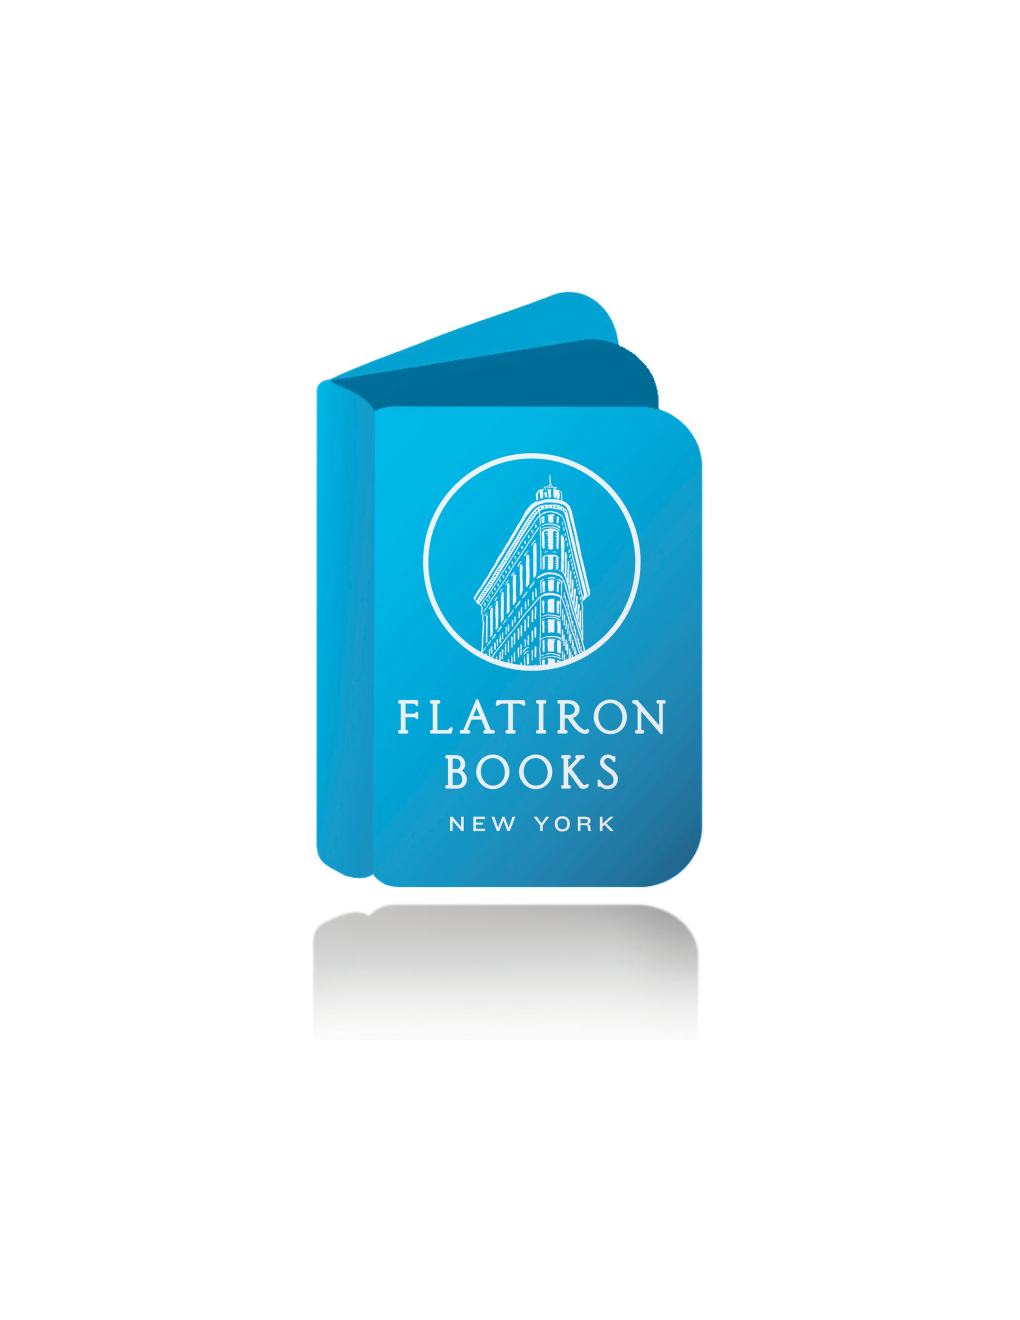 Flatiron Books December 2017